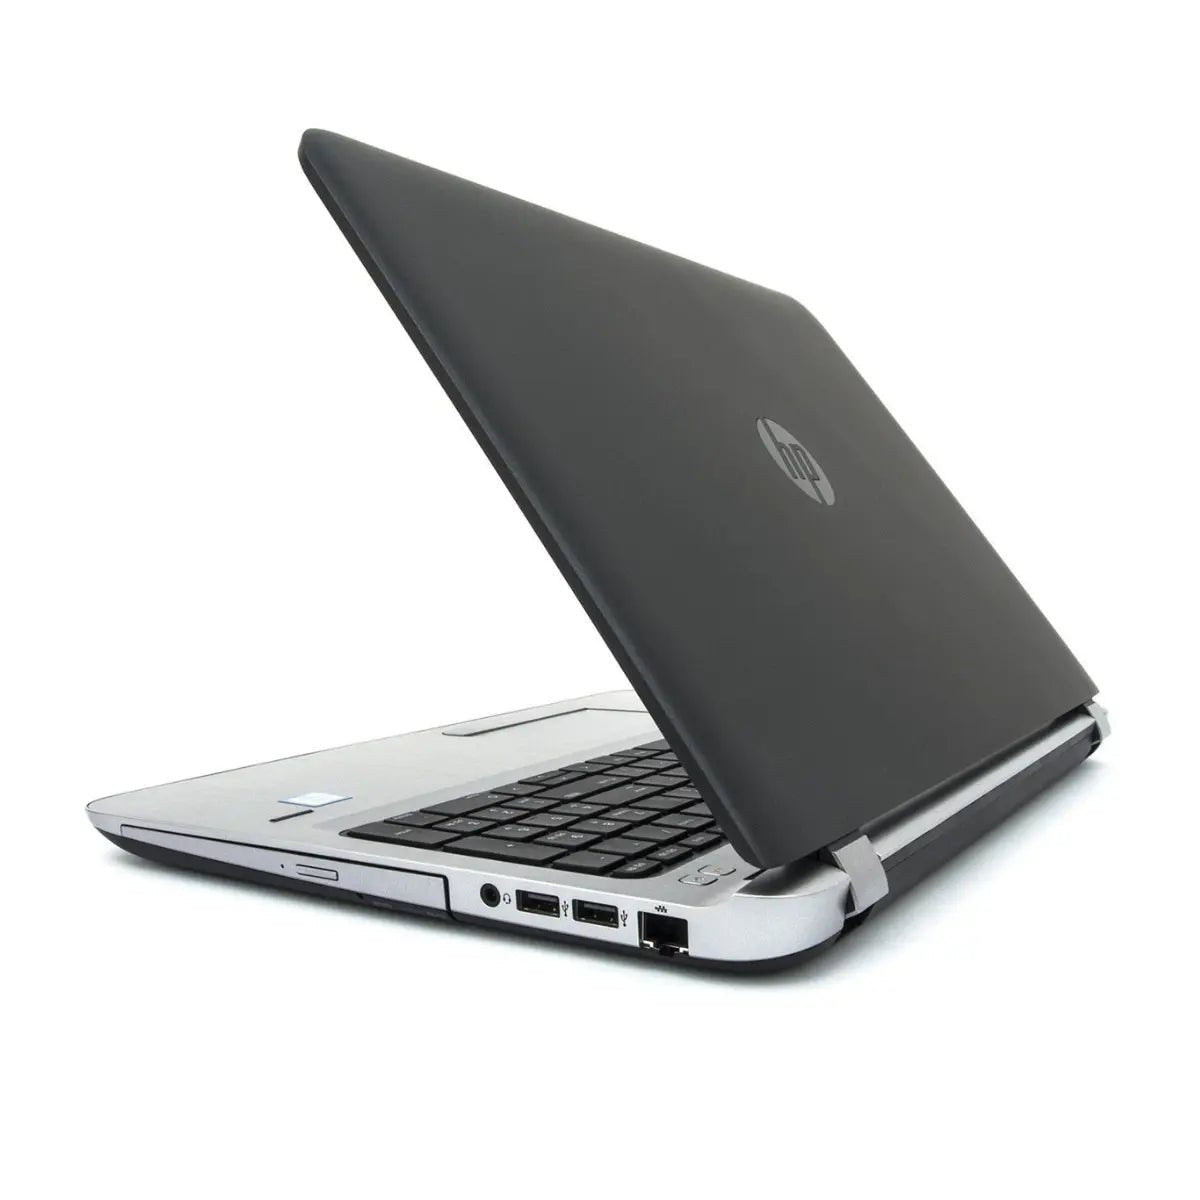 Laptop - HP Probook 450 G3, i5 6ta Gen., 8 GB RAM 240 GB SSD